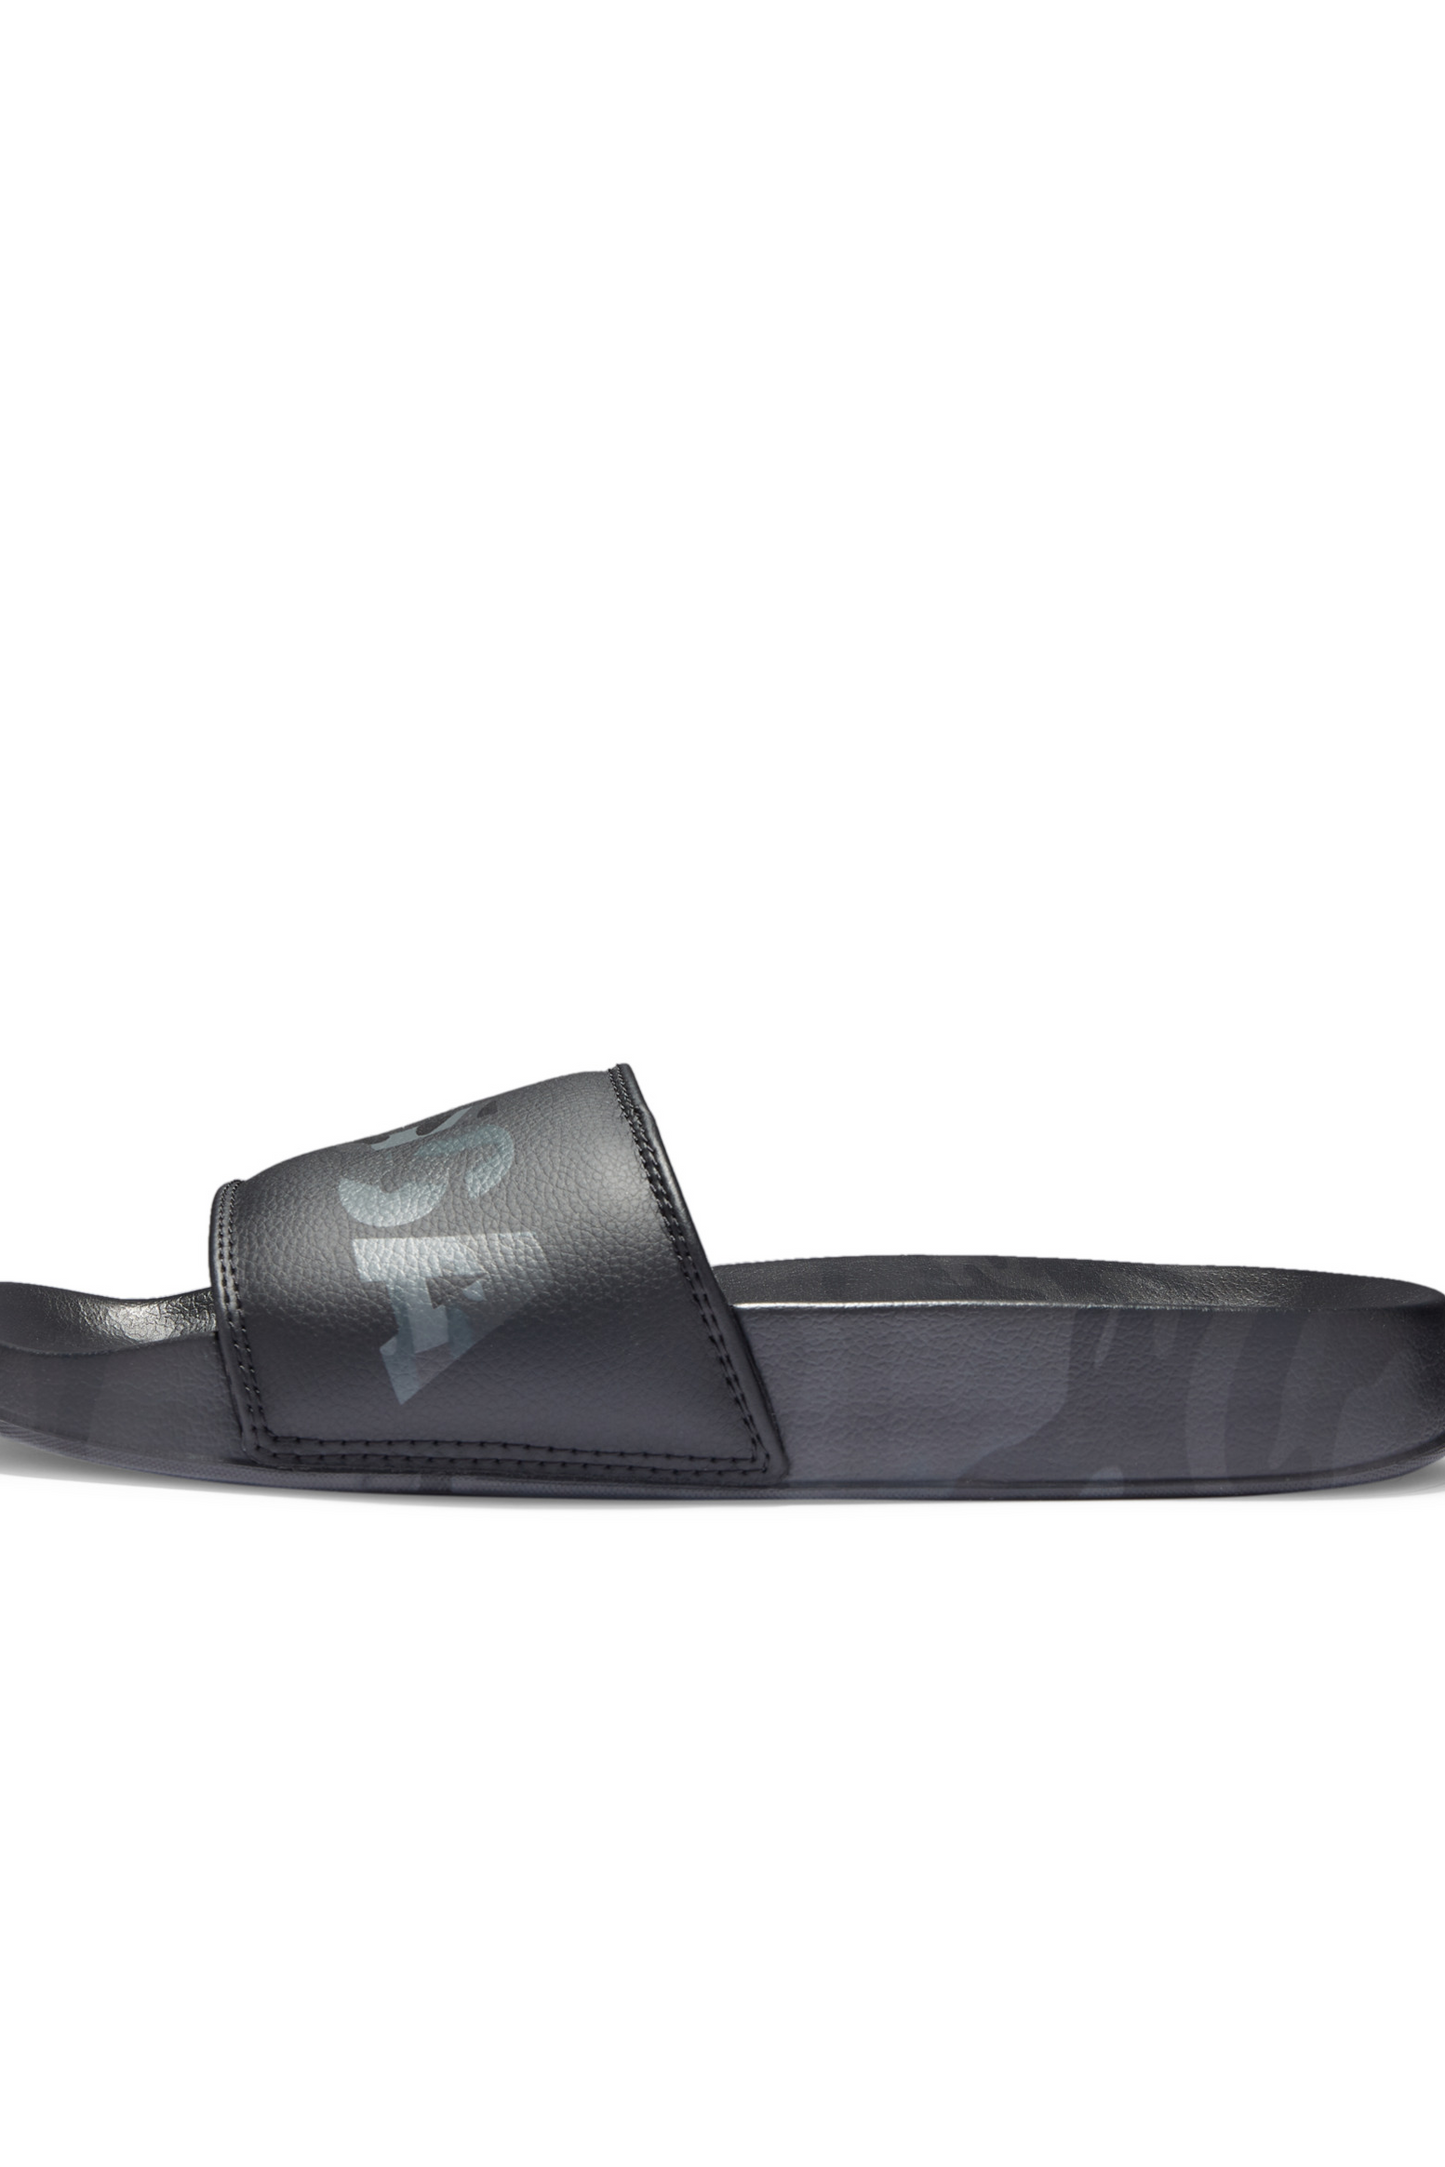 DC Shoes Men's Slide Sandals